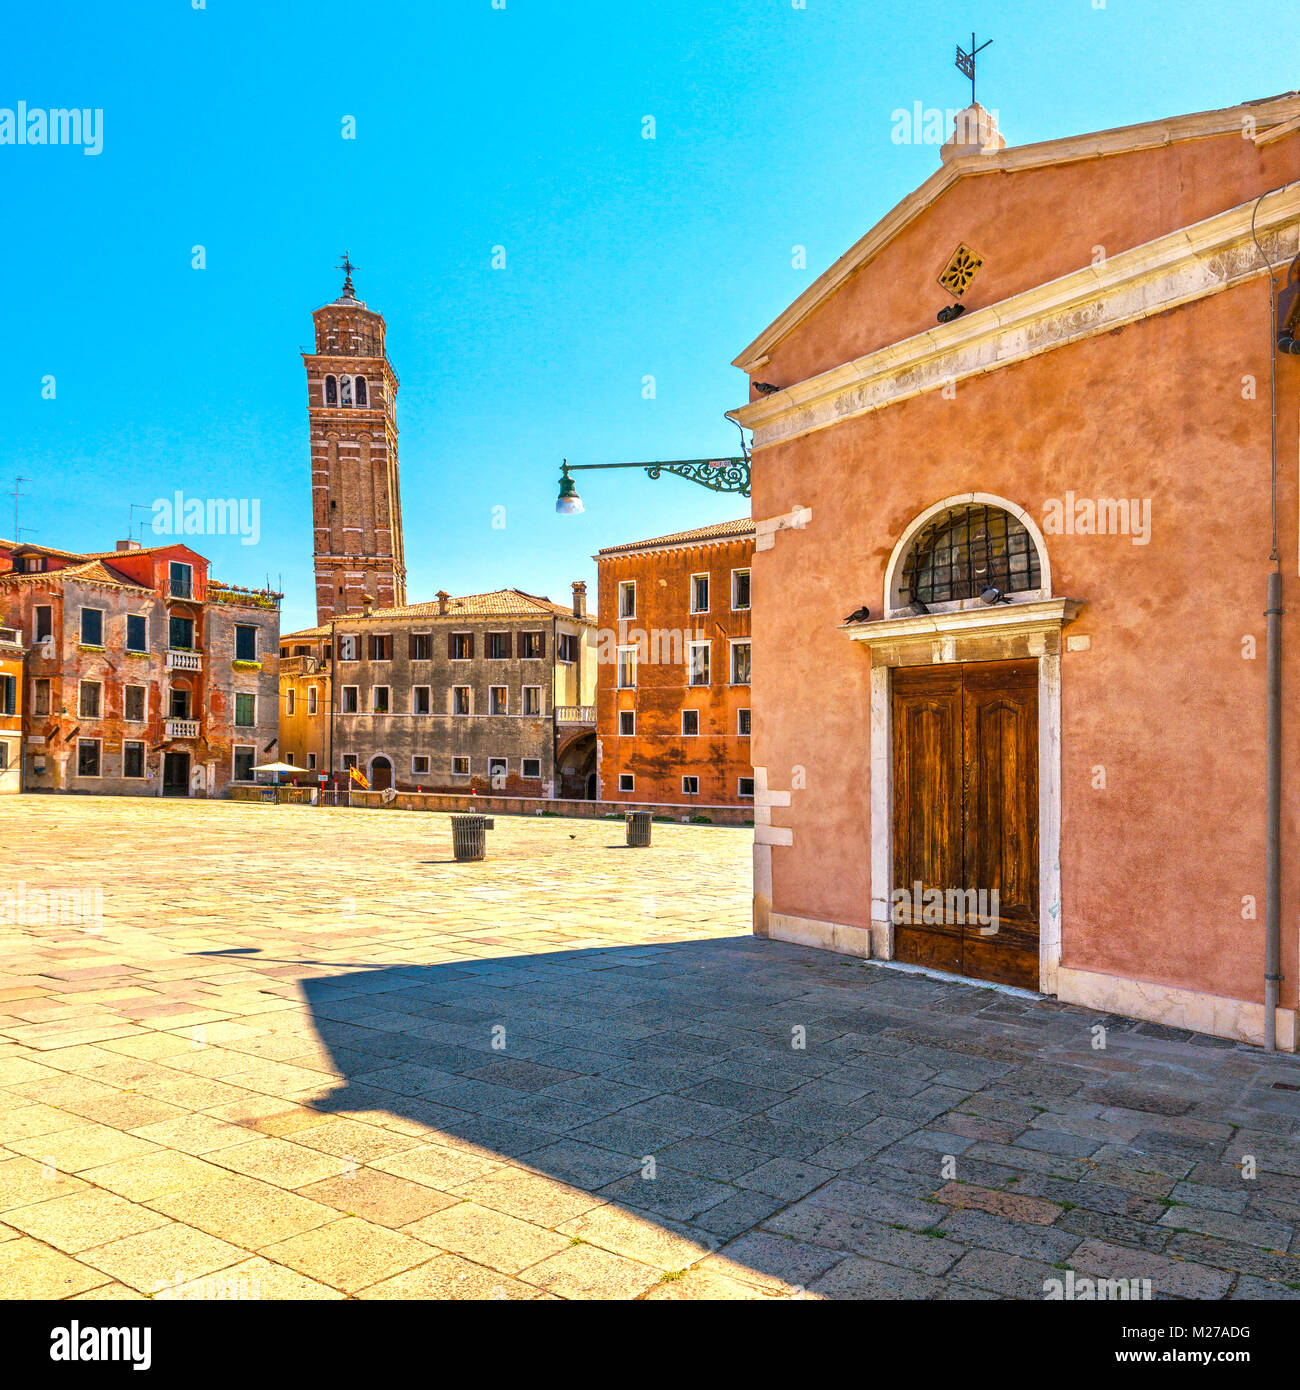 La ville de Venise, Campo S Anzolo square, petite église et tour campanile de Pise. Vénétie Italie Europe. Banque D'Images